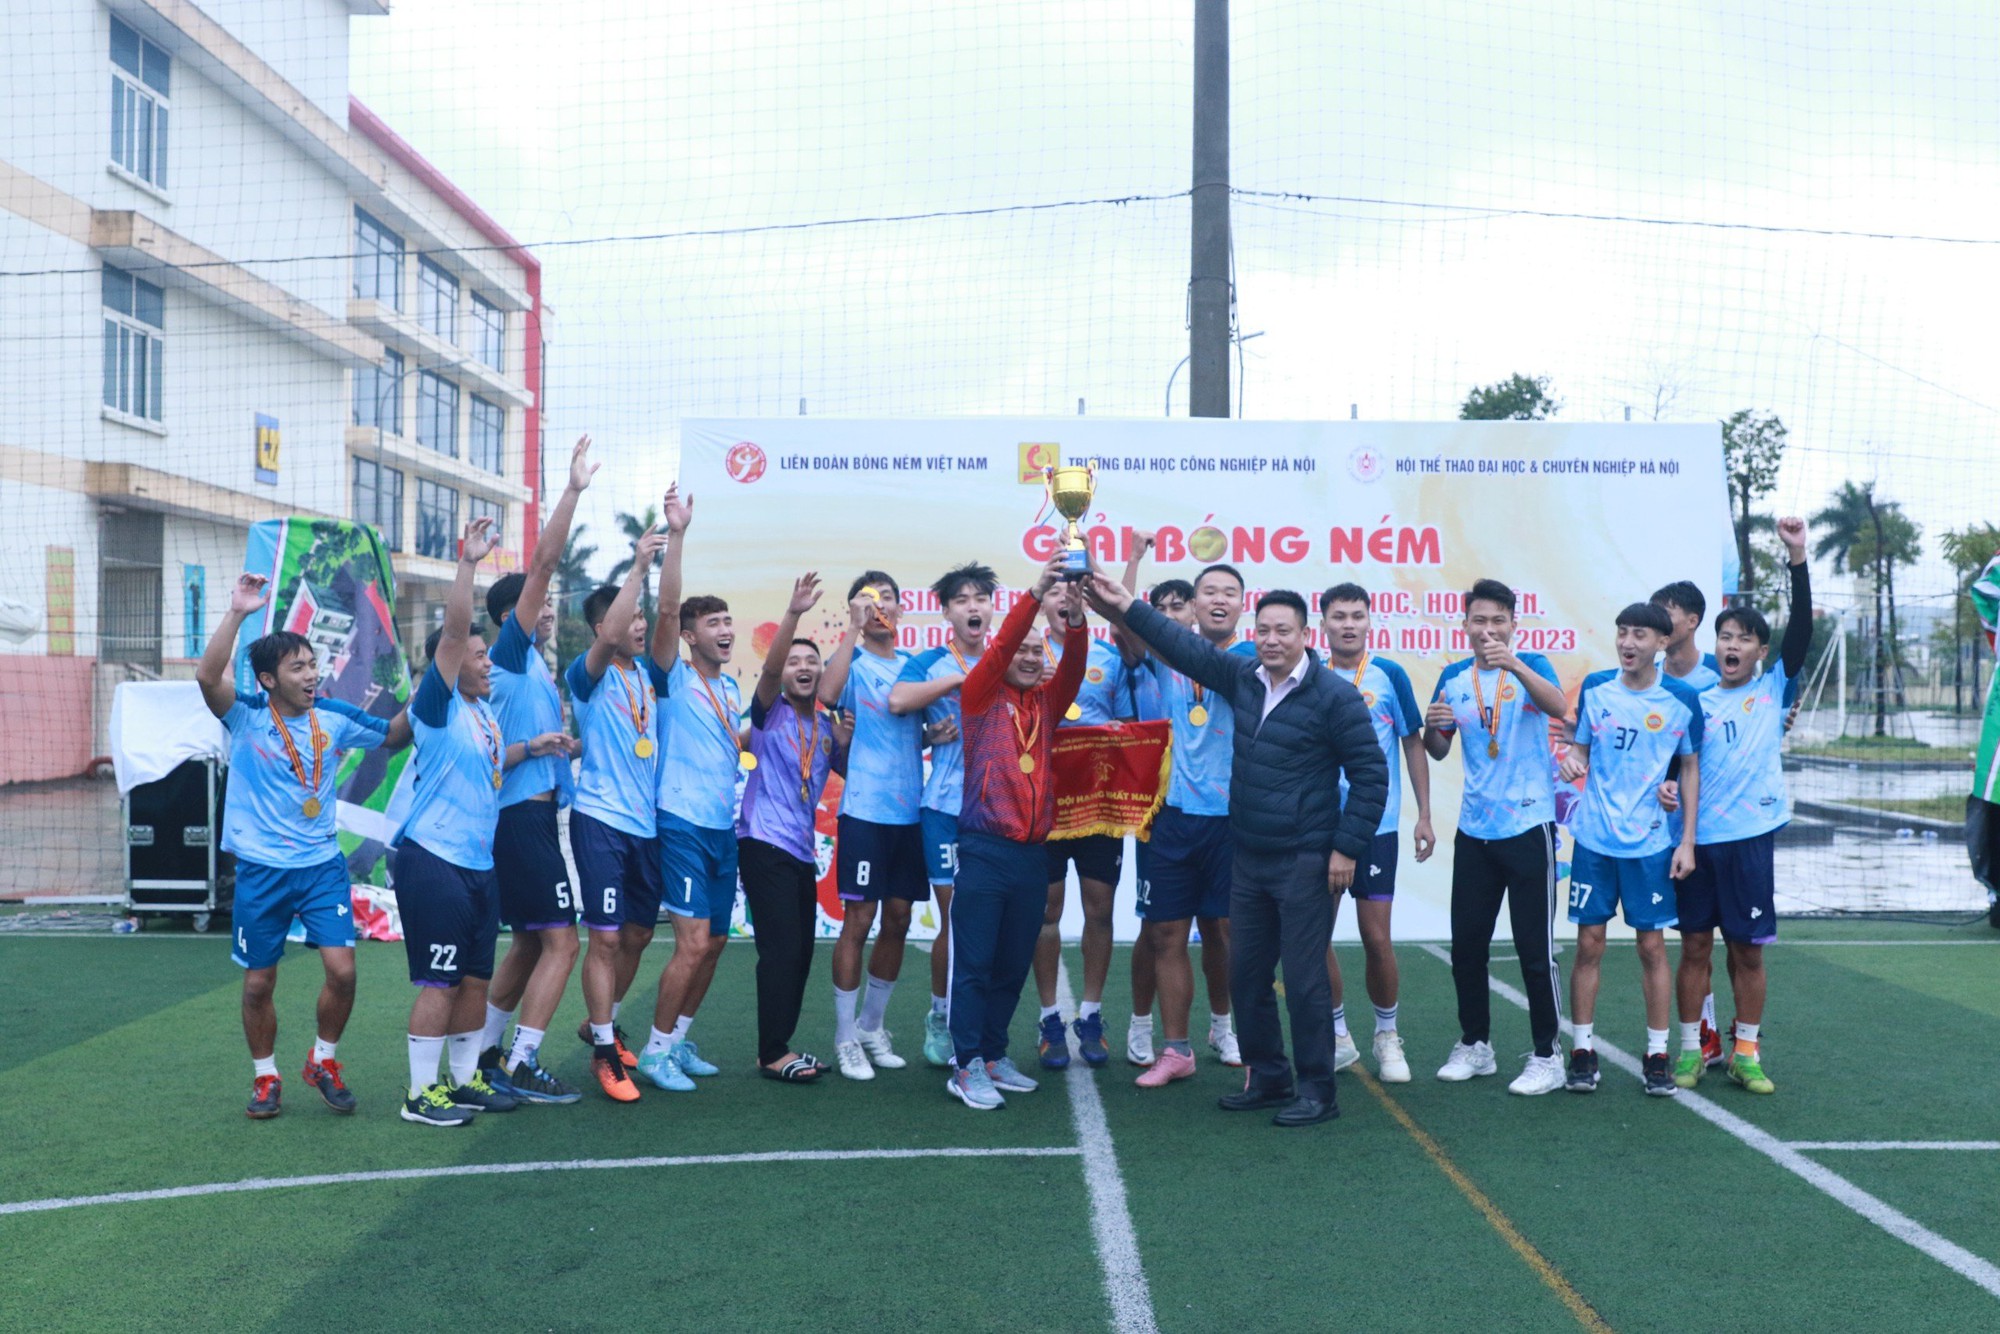 Đại học TDTT Bắc Ninh, ĐH Thương Mại vô địch giải Bóng ném các trường ĐH, HV, CĐ và Chuyên nghiệp khu vực Hà Nội - Ảnh 5.